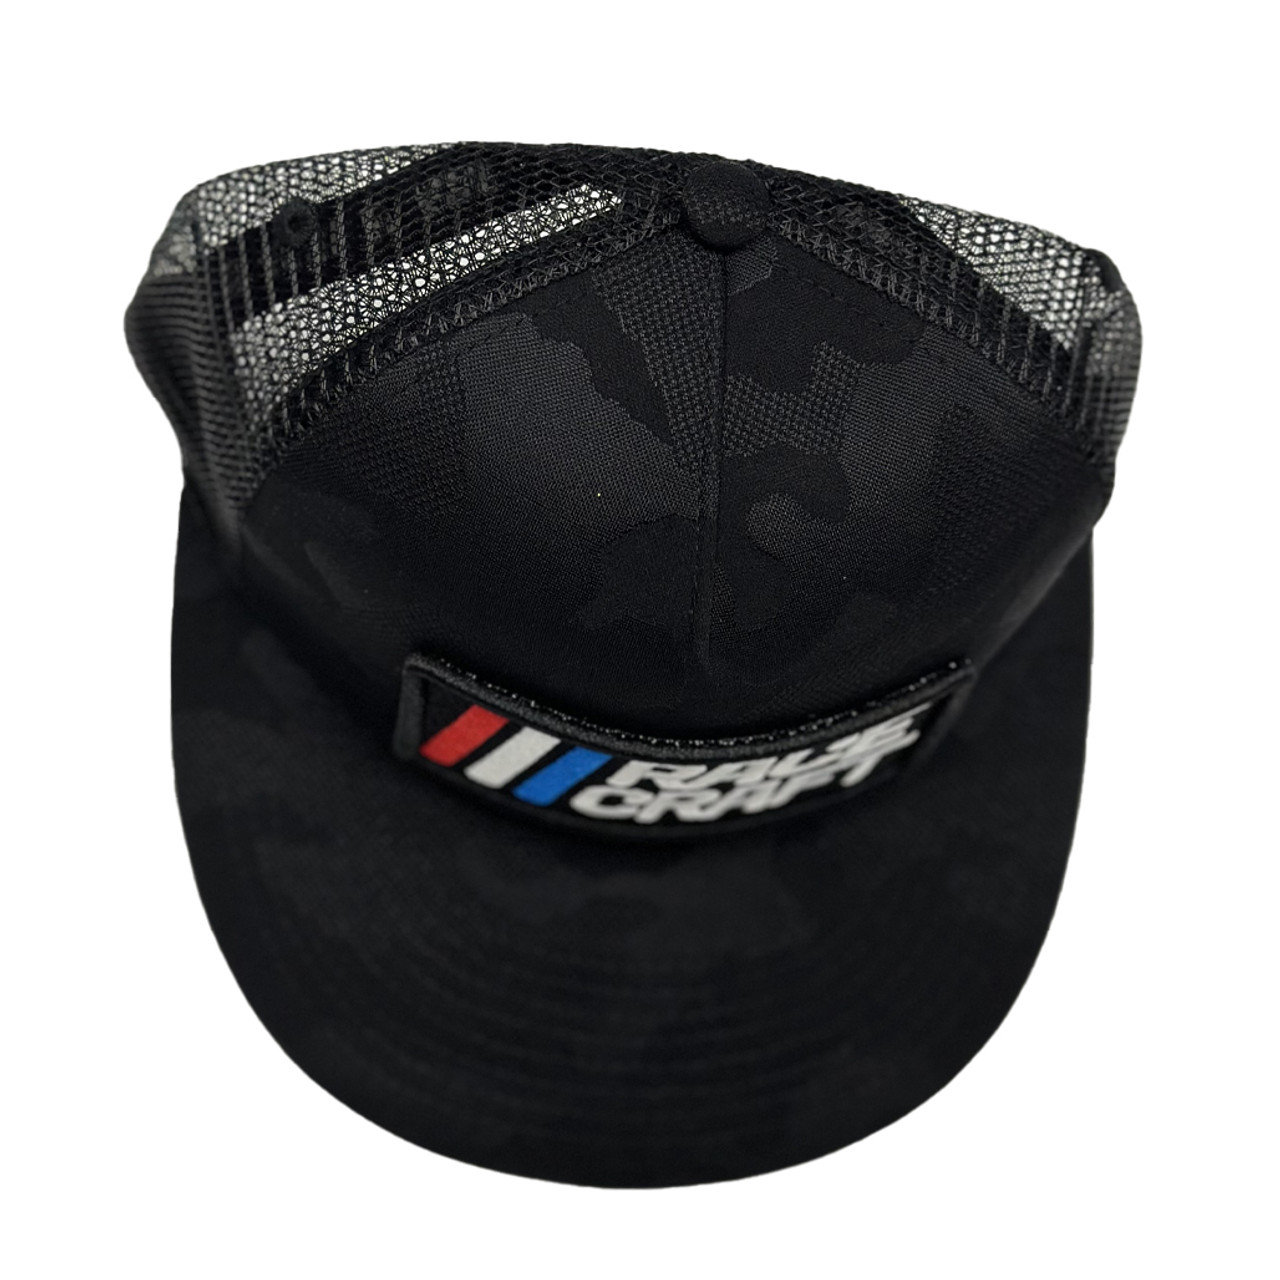 RaceCraft USA Stealth Camo Speedway Trucker Hat (Flatbill)